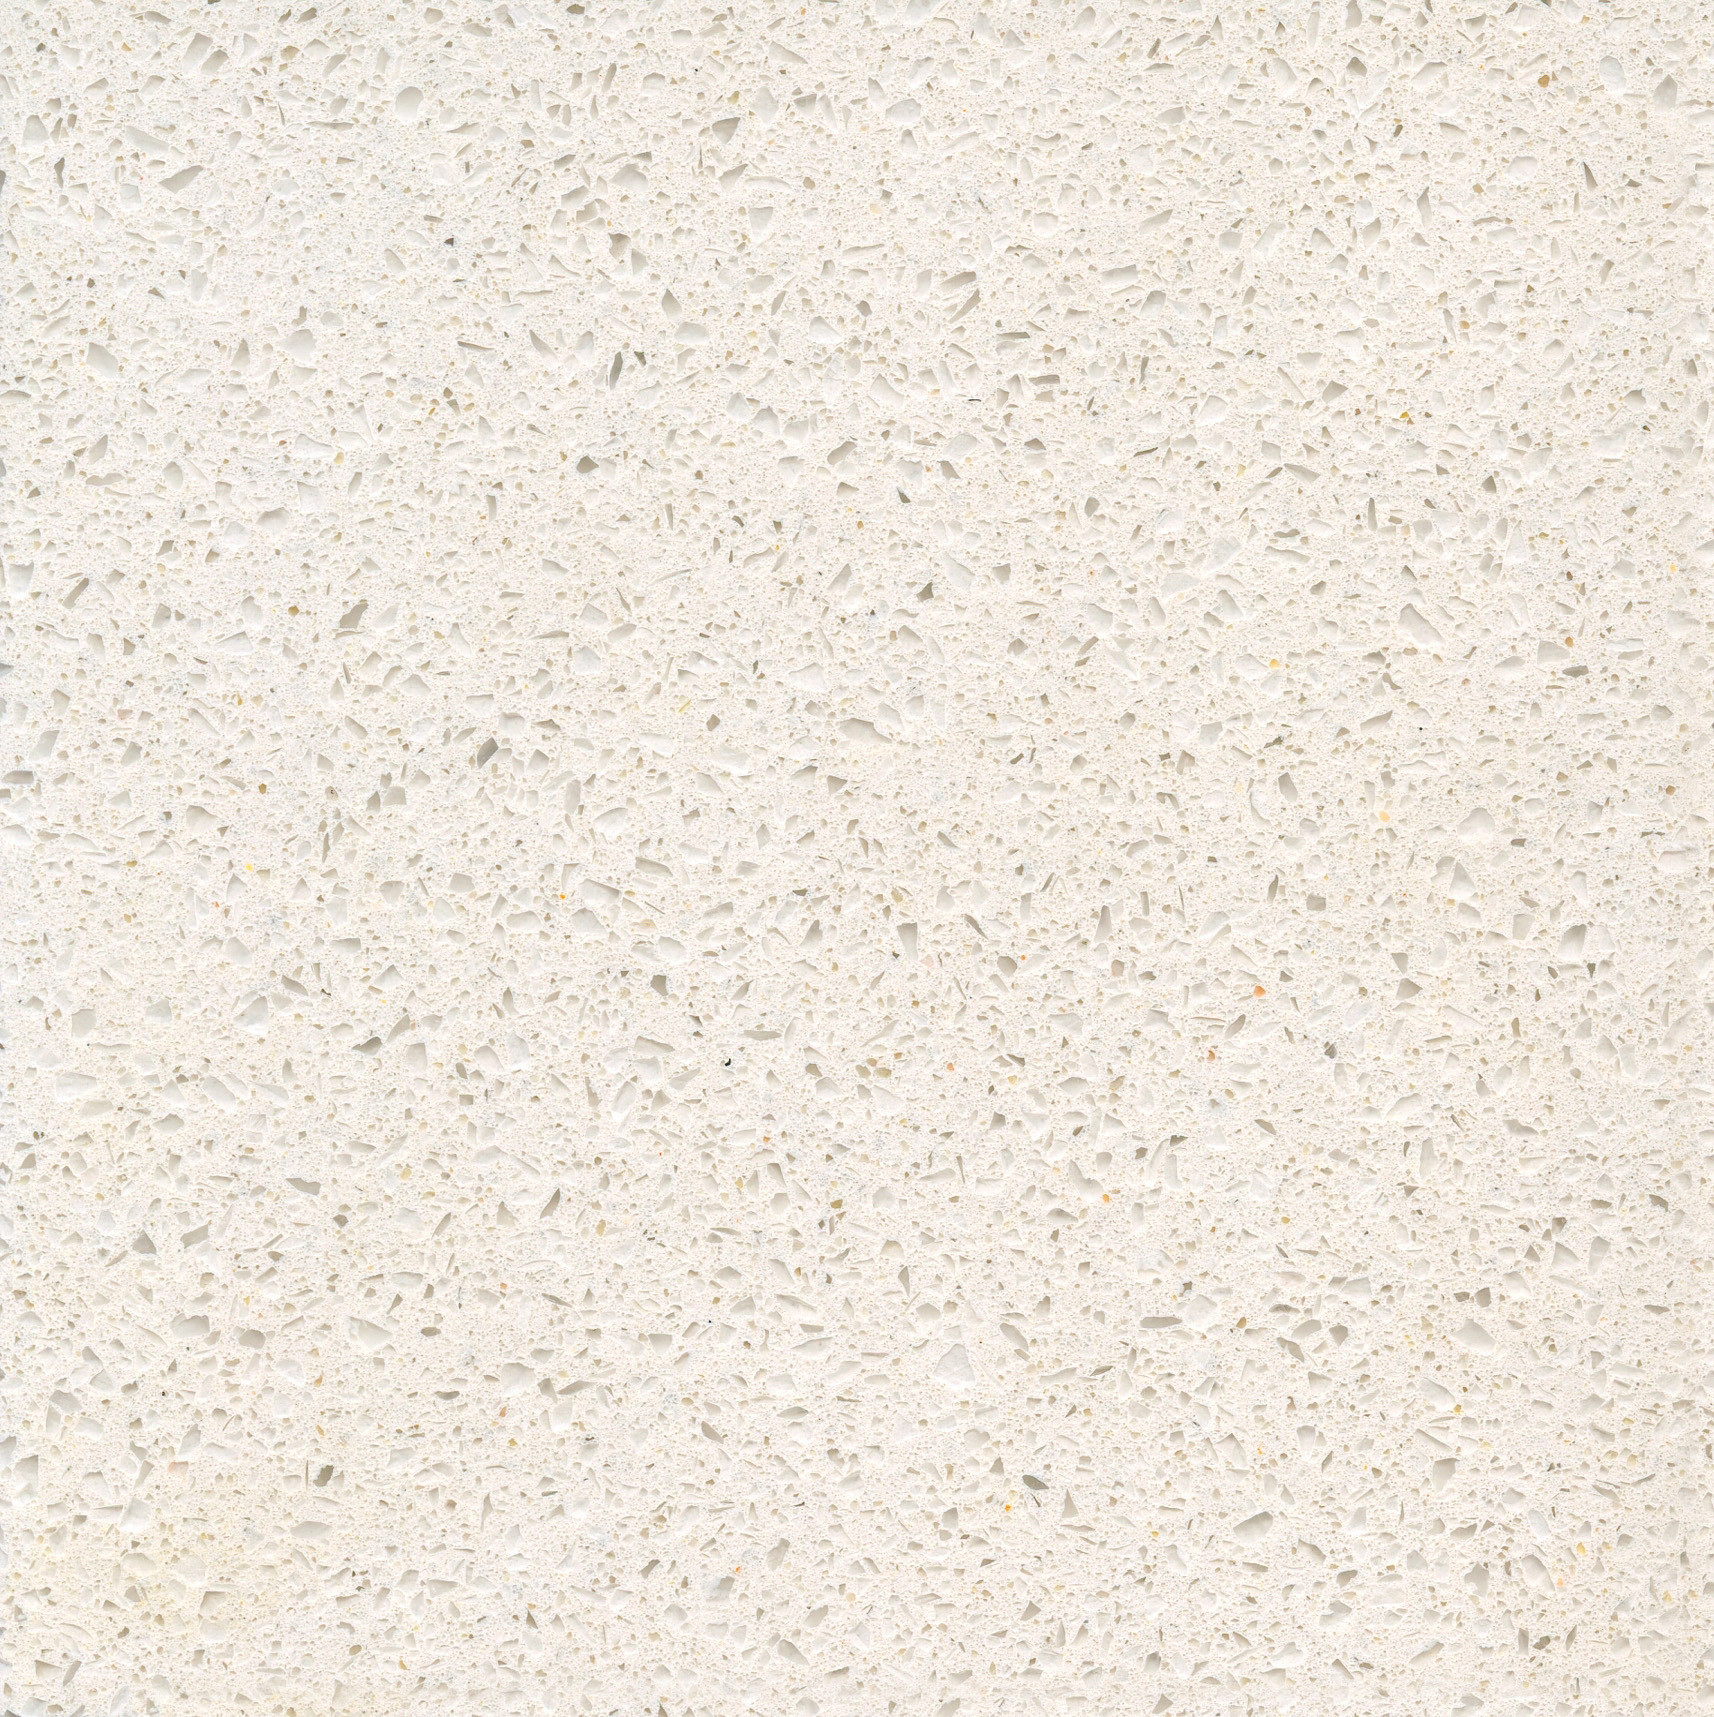 Blanco Maple quartz countertop close up